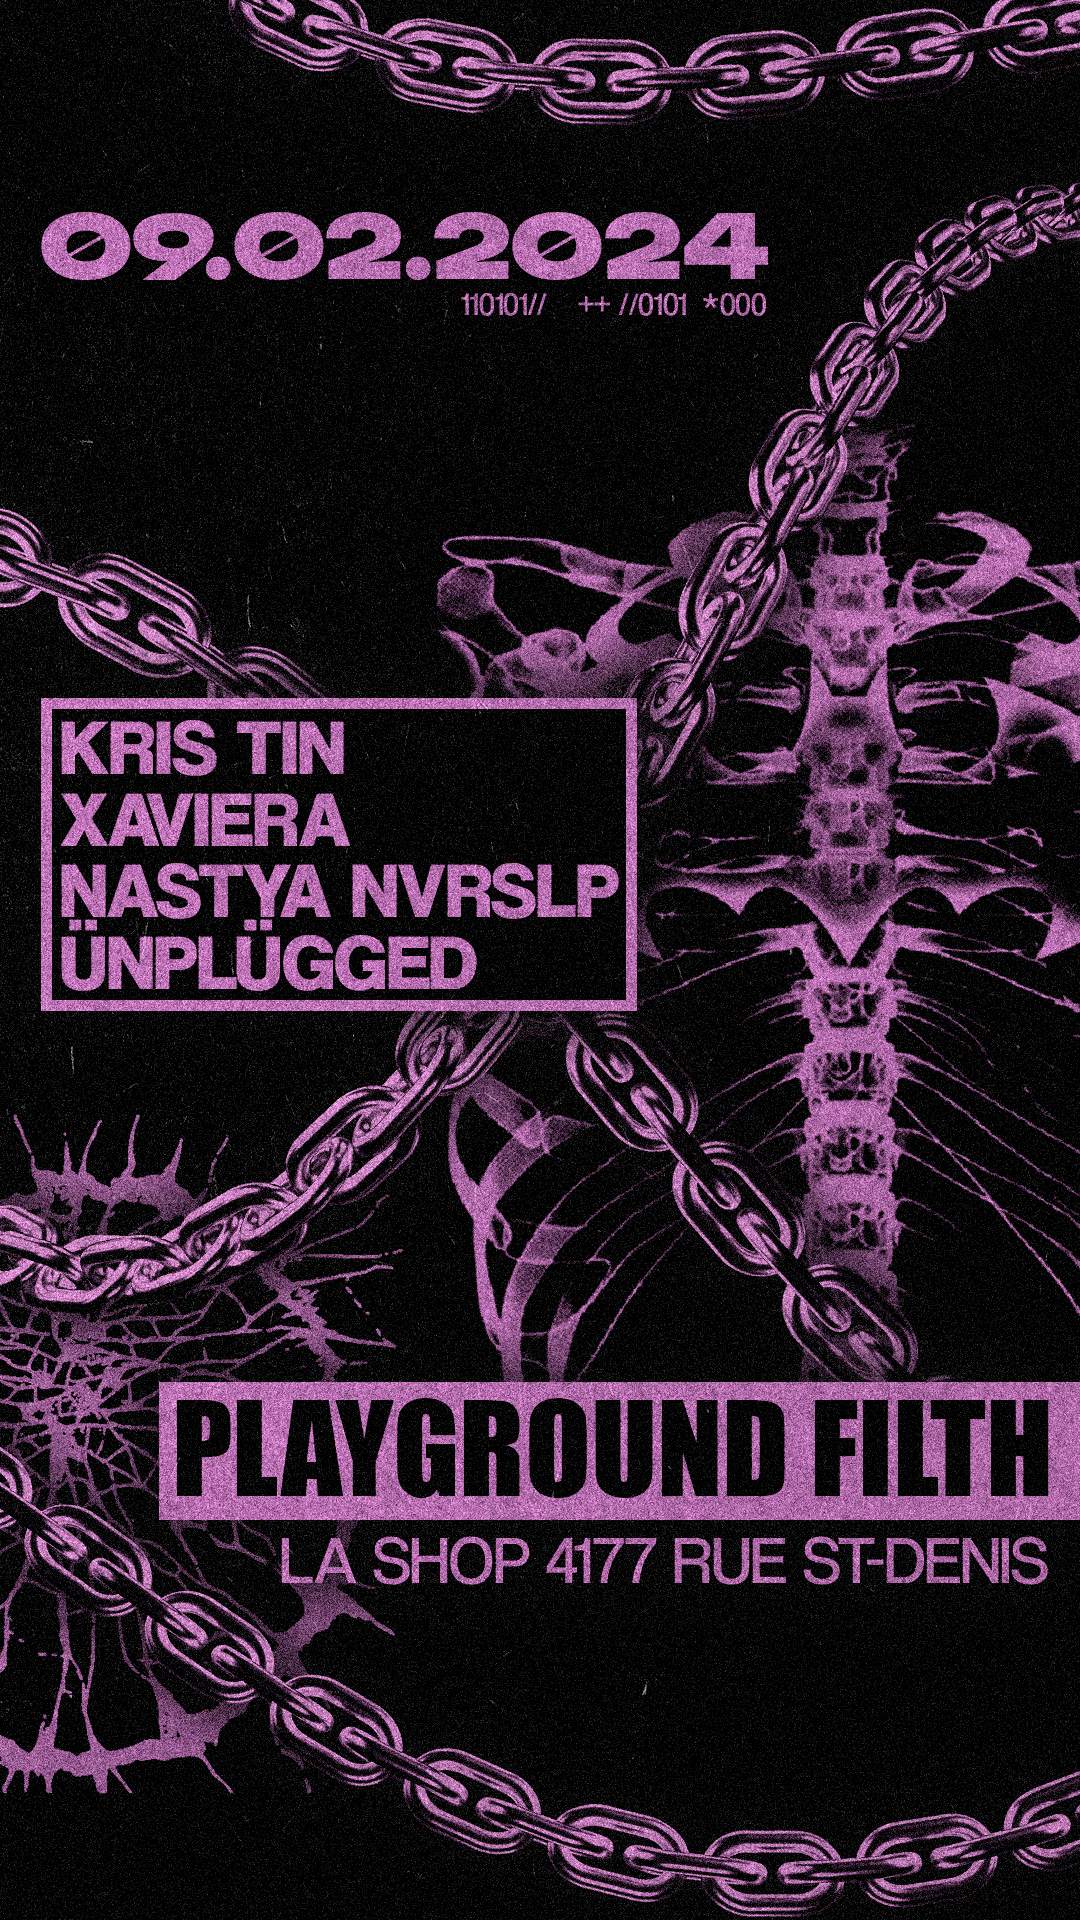 Playground Filth with Kris Tin, Xaviera, NASTYA NVRSLP, Ünplügged - Página trasera